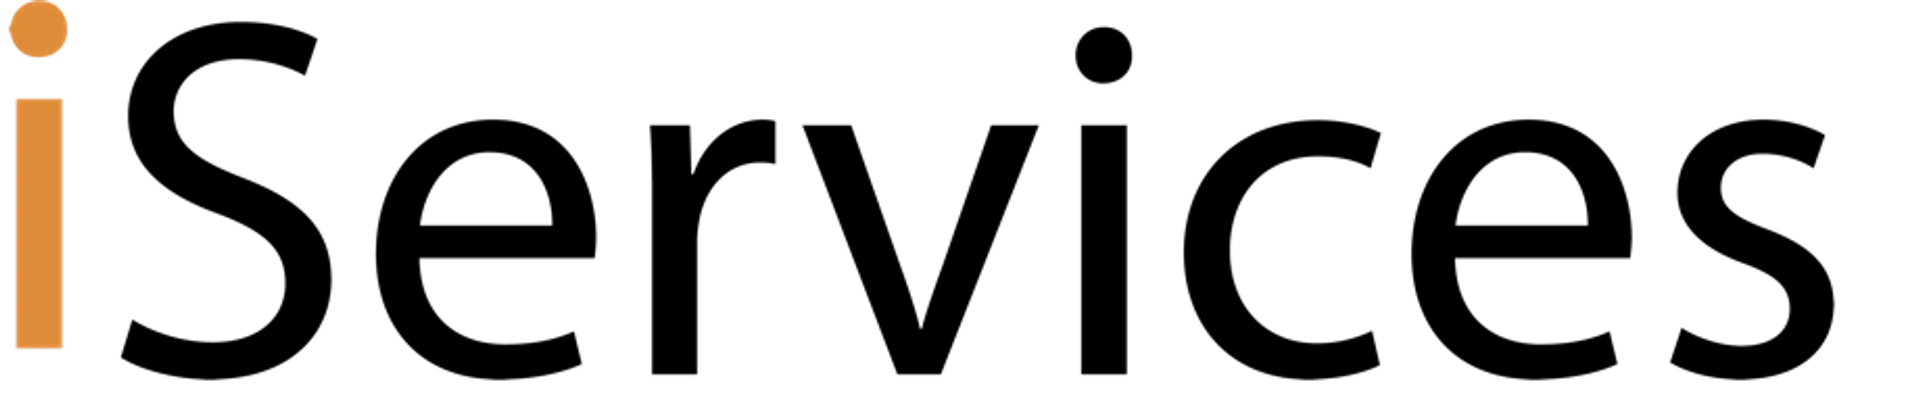 ISERVICES logo de folhetos